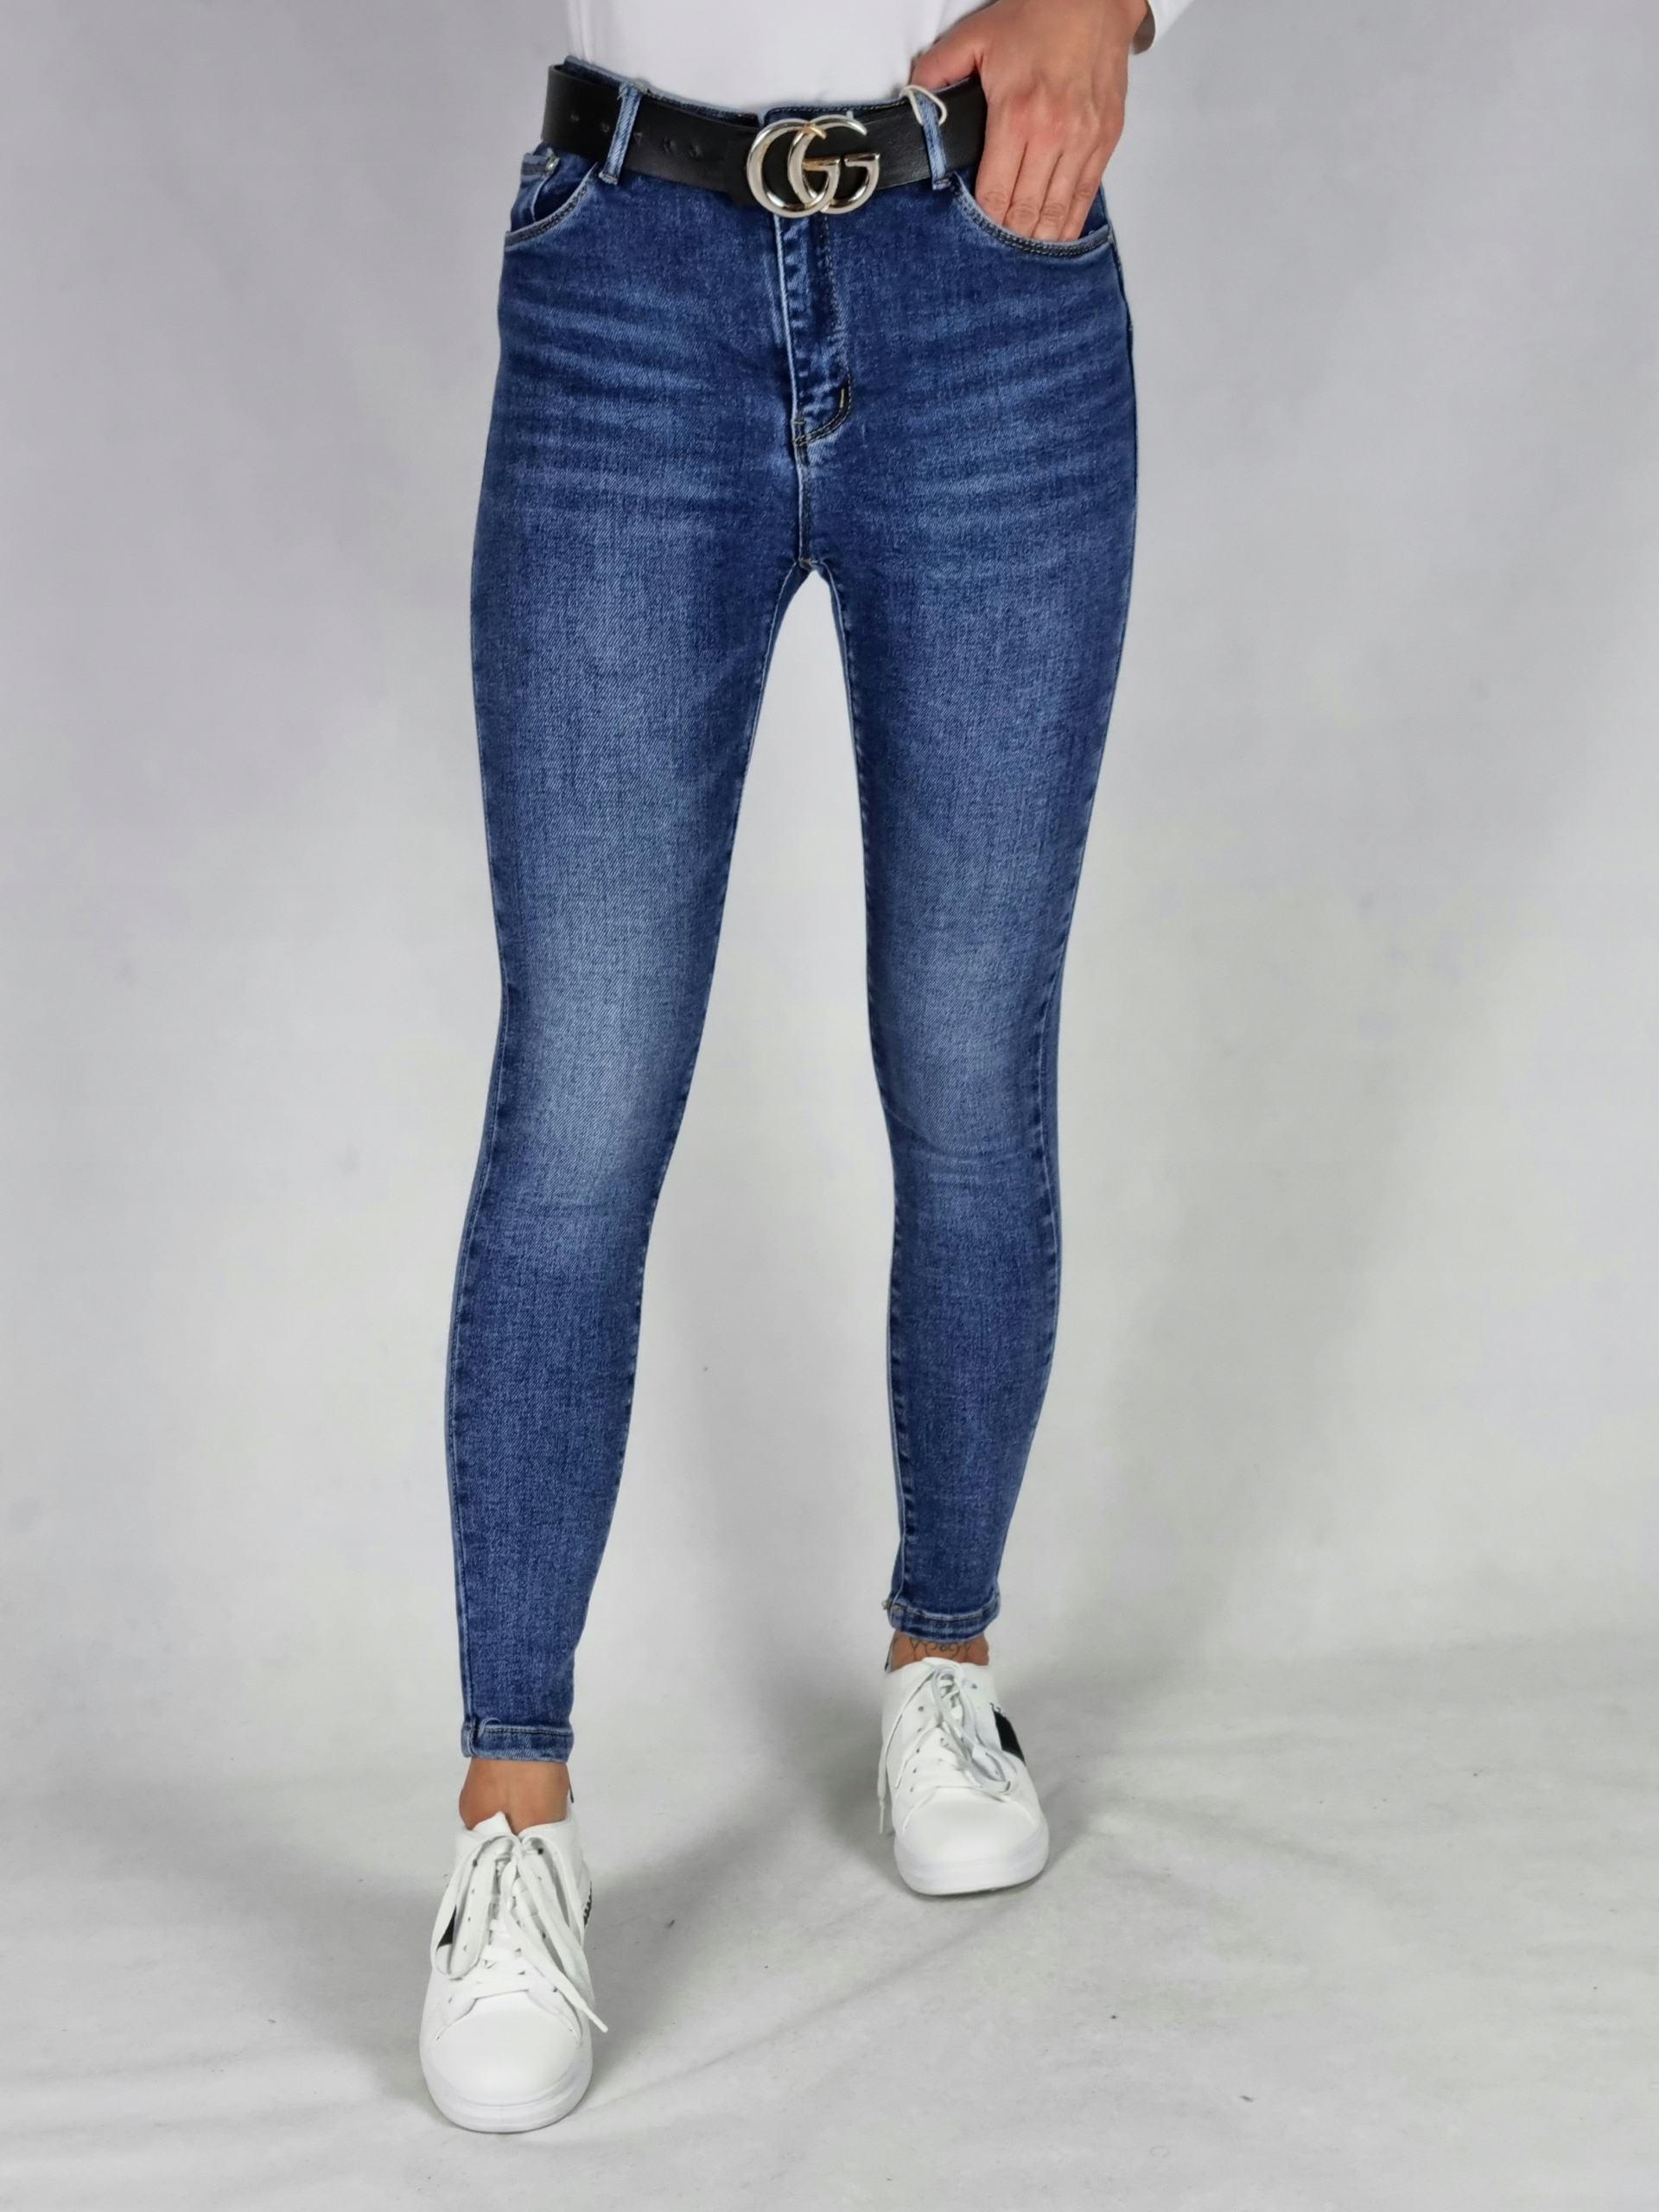 М. Сара джинсовые брюки классический размер 28 цвет синий